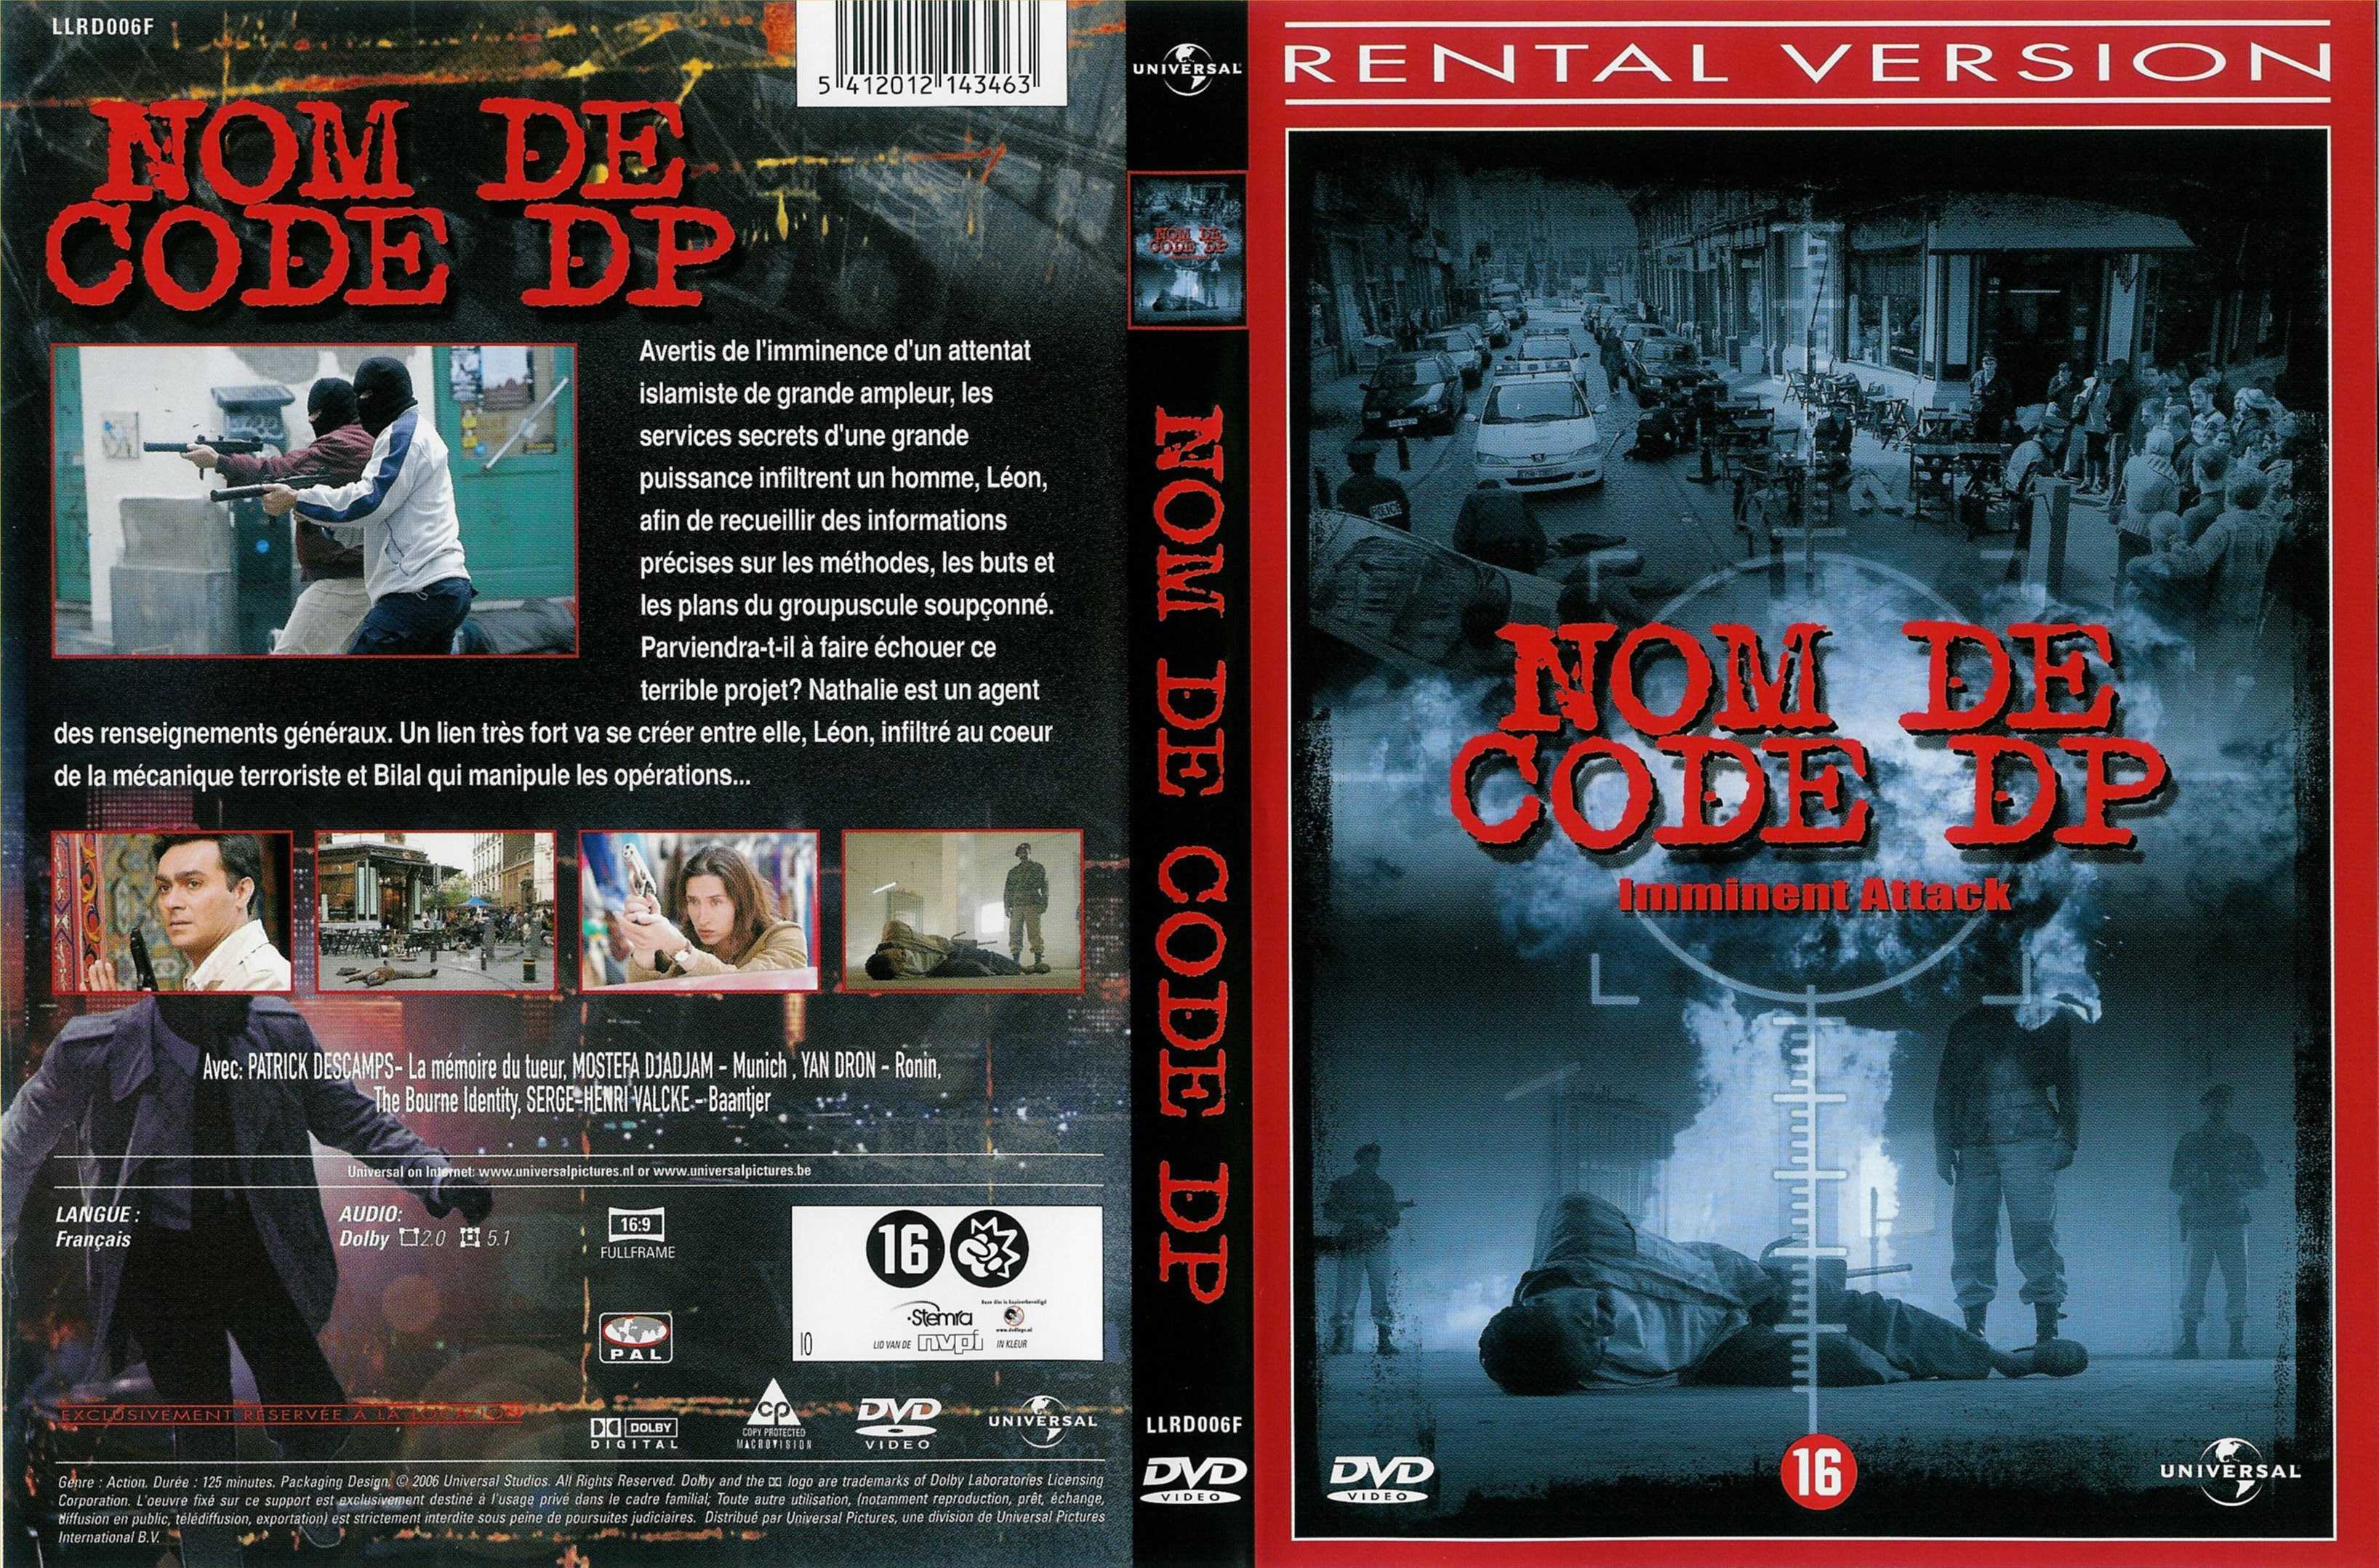 Jaquette DVD Nom de code DP